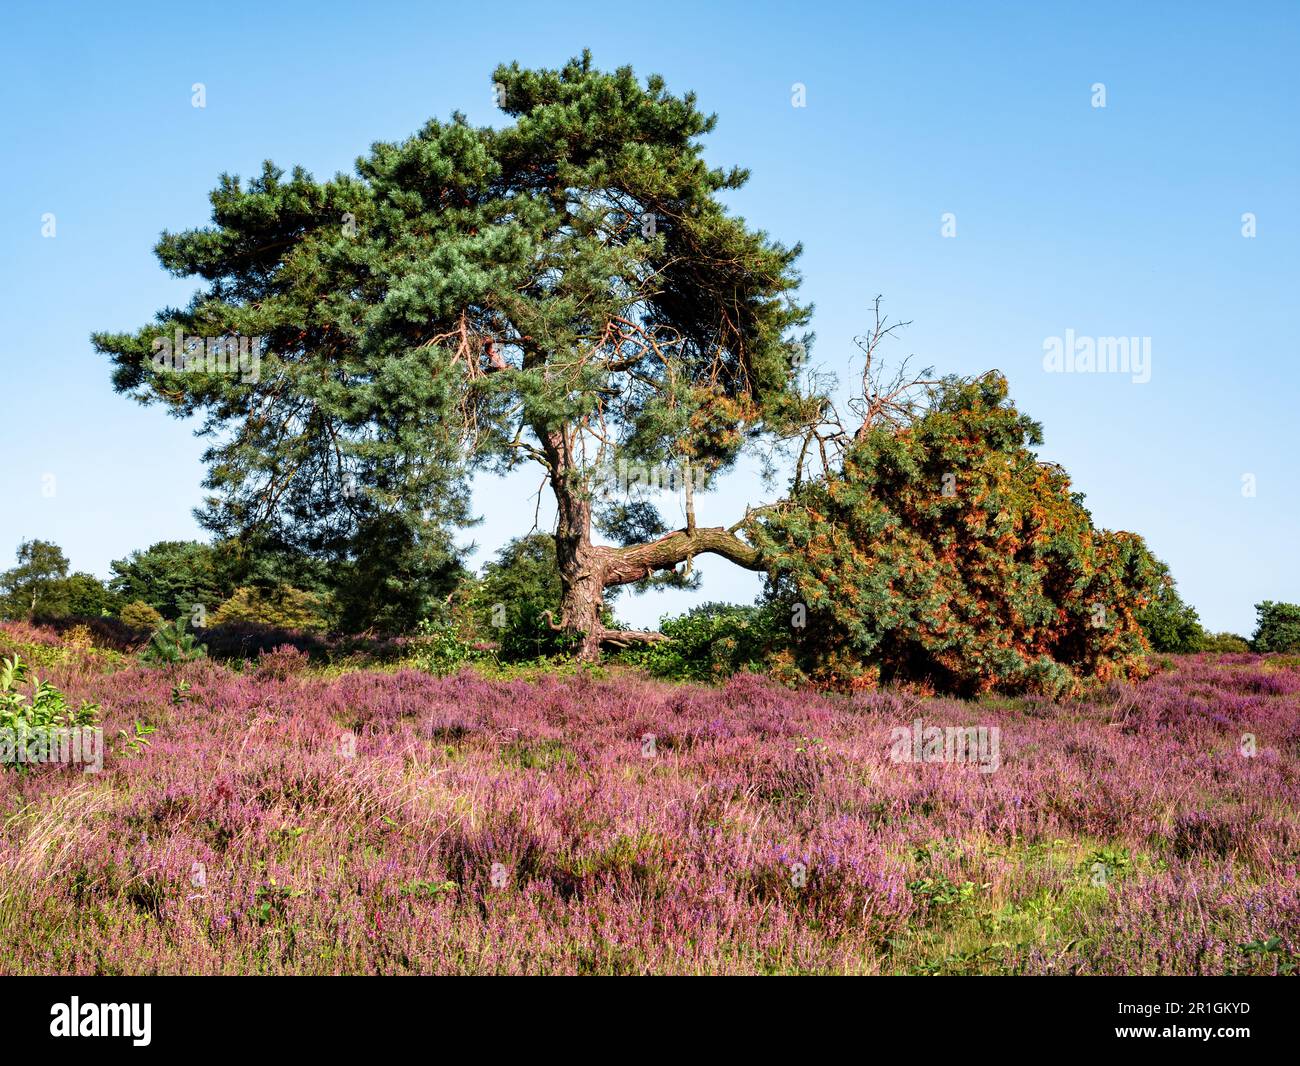 Pin et bruyère pourpre dans la réserve naturelle de Zuiderheide heathland à Het Gooi, pays-Bas Banque D'Images